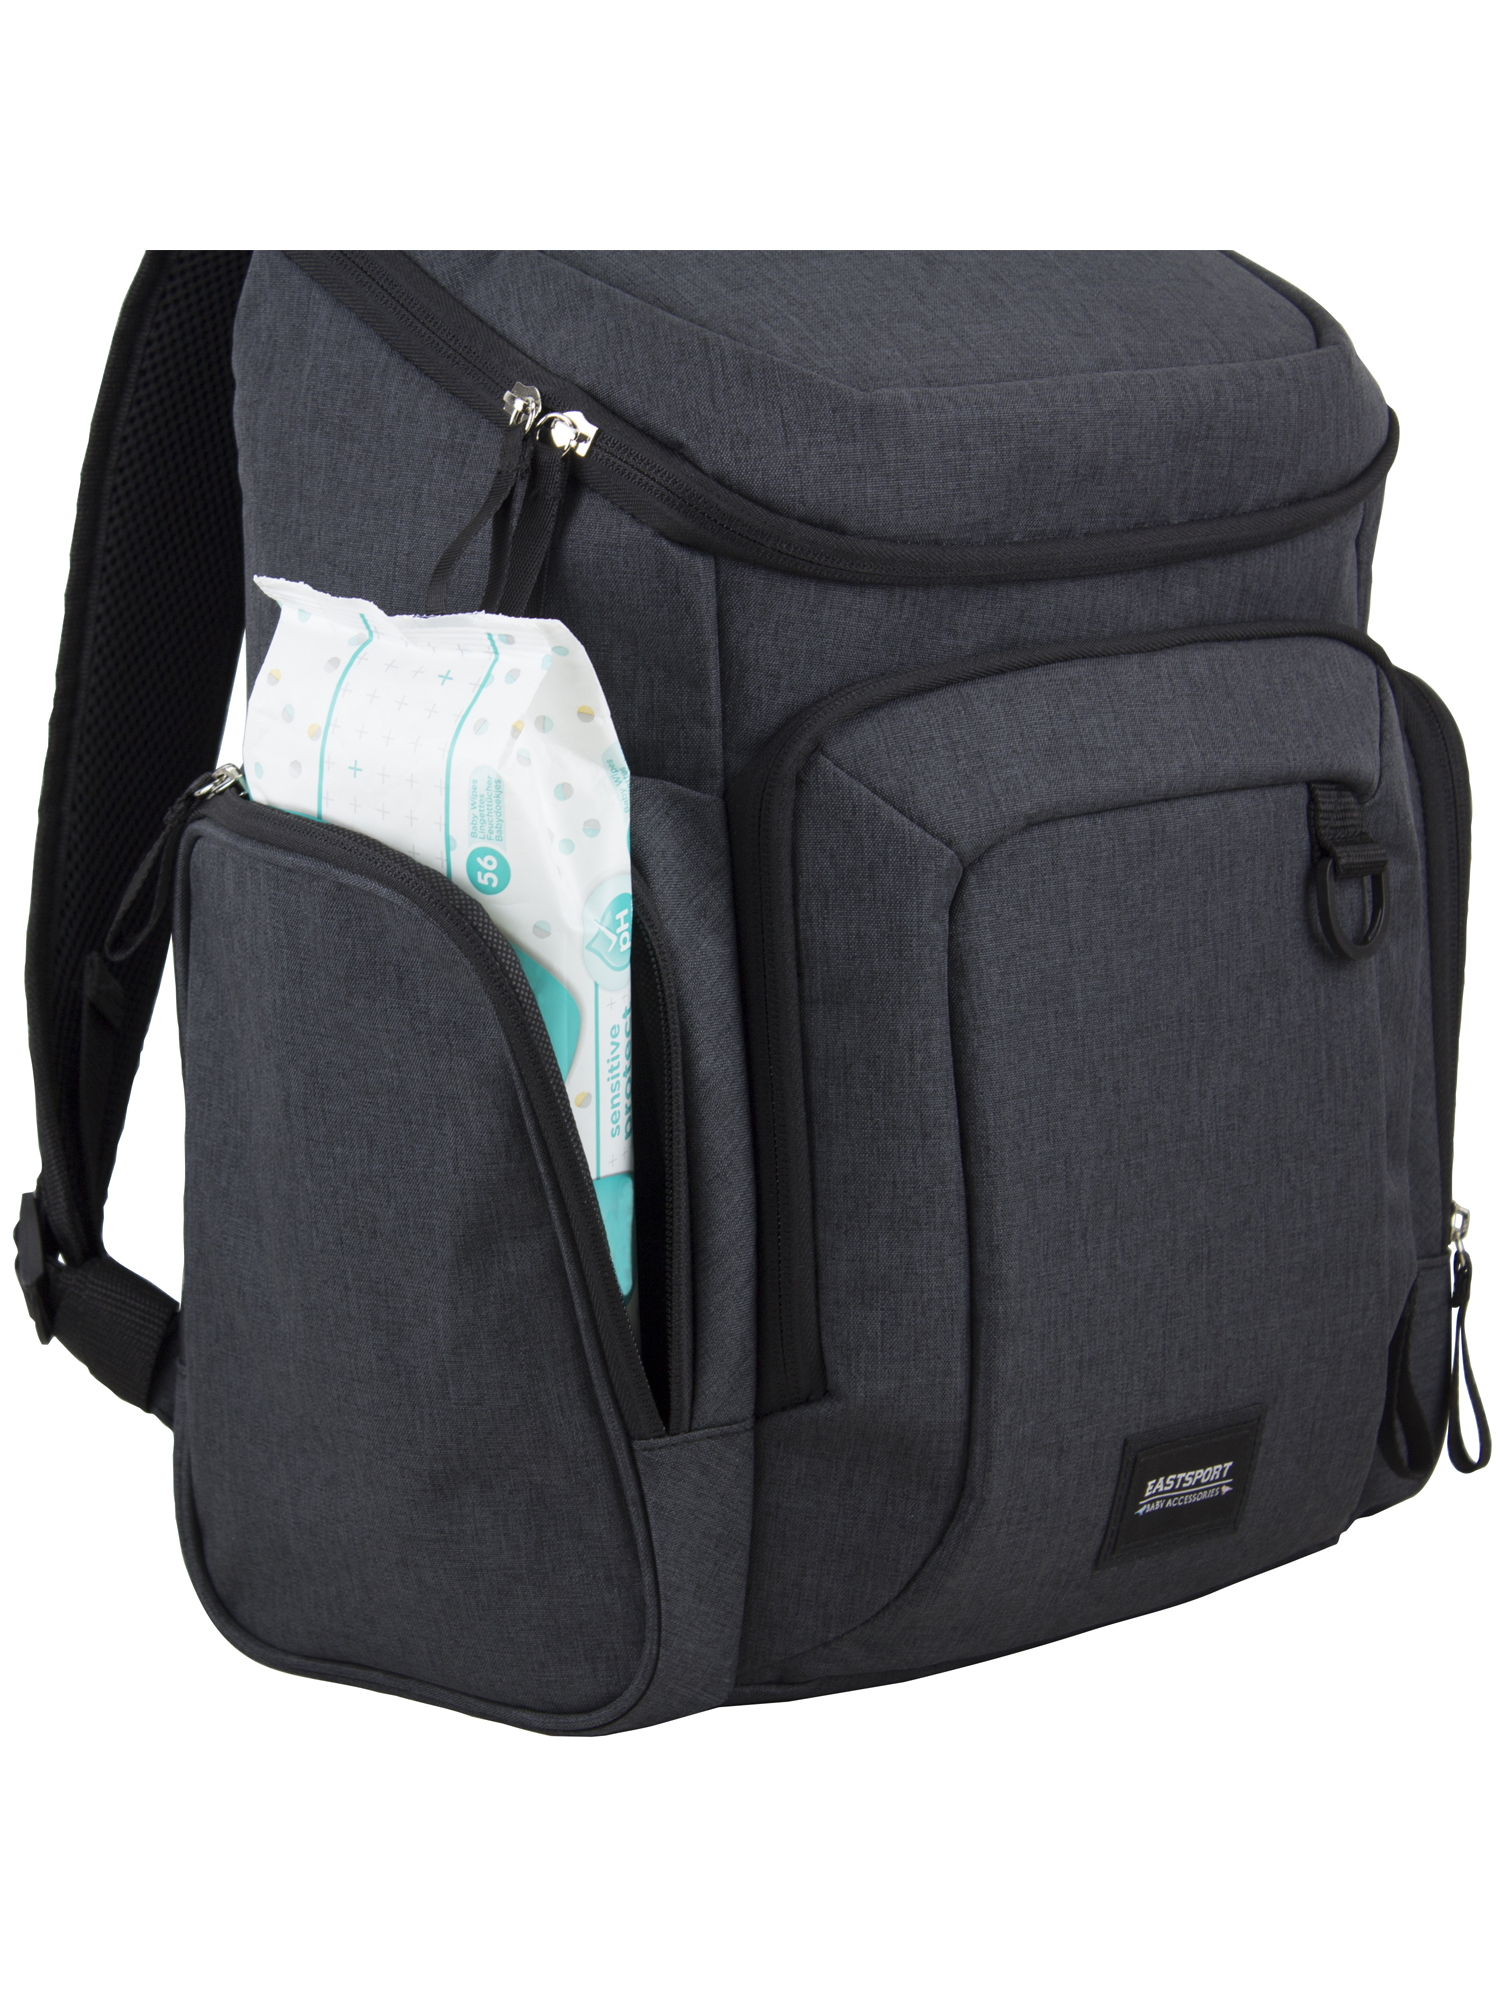 Eastsport Wooster St. Backpack Diaper Bag with Adjustable Shoulder Straps, Bonus Changing Pad, Stroller Straps and Insulated Zipper Pockets, Dark Grey - image 5 of 11